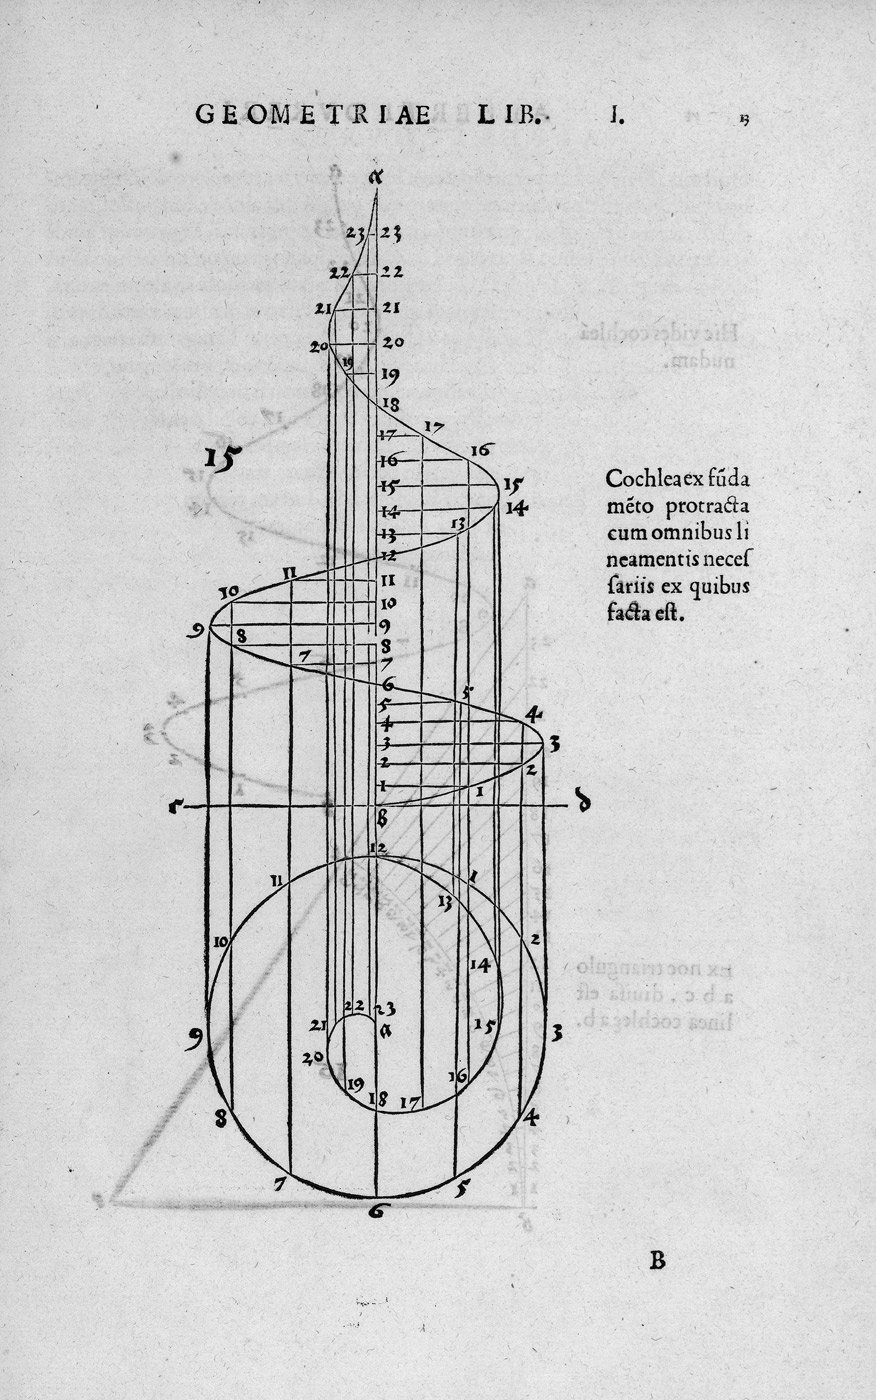 Lot 1095, Auction  115, Dürer, Albrecht, Quatuor his suarum Institutionum geometricarum 